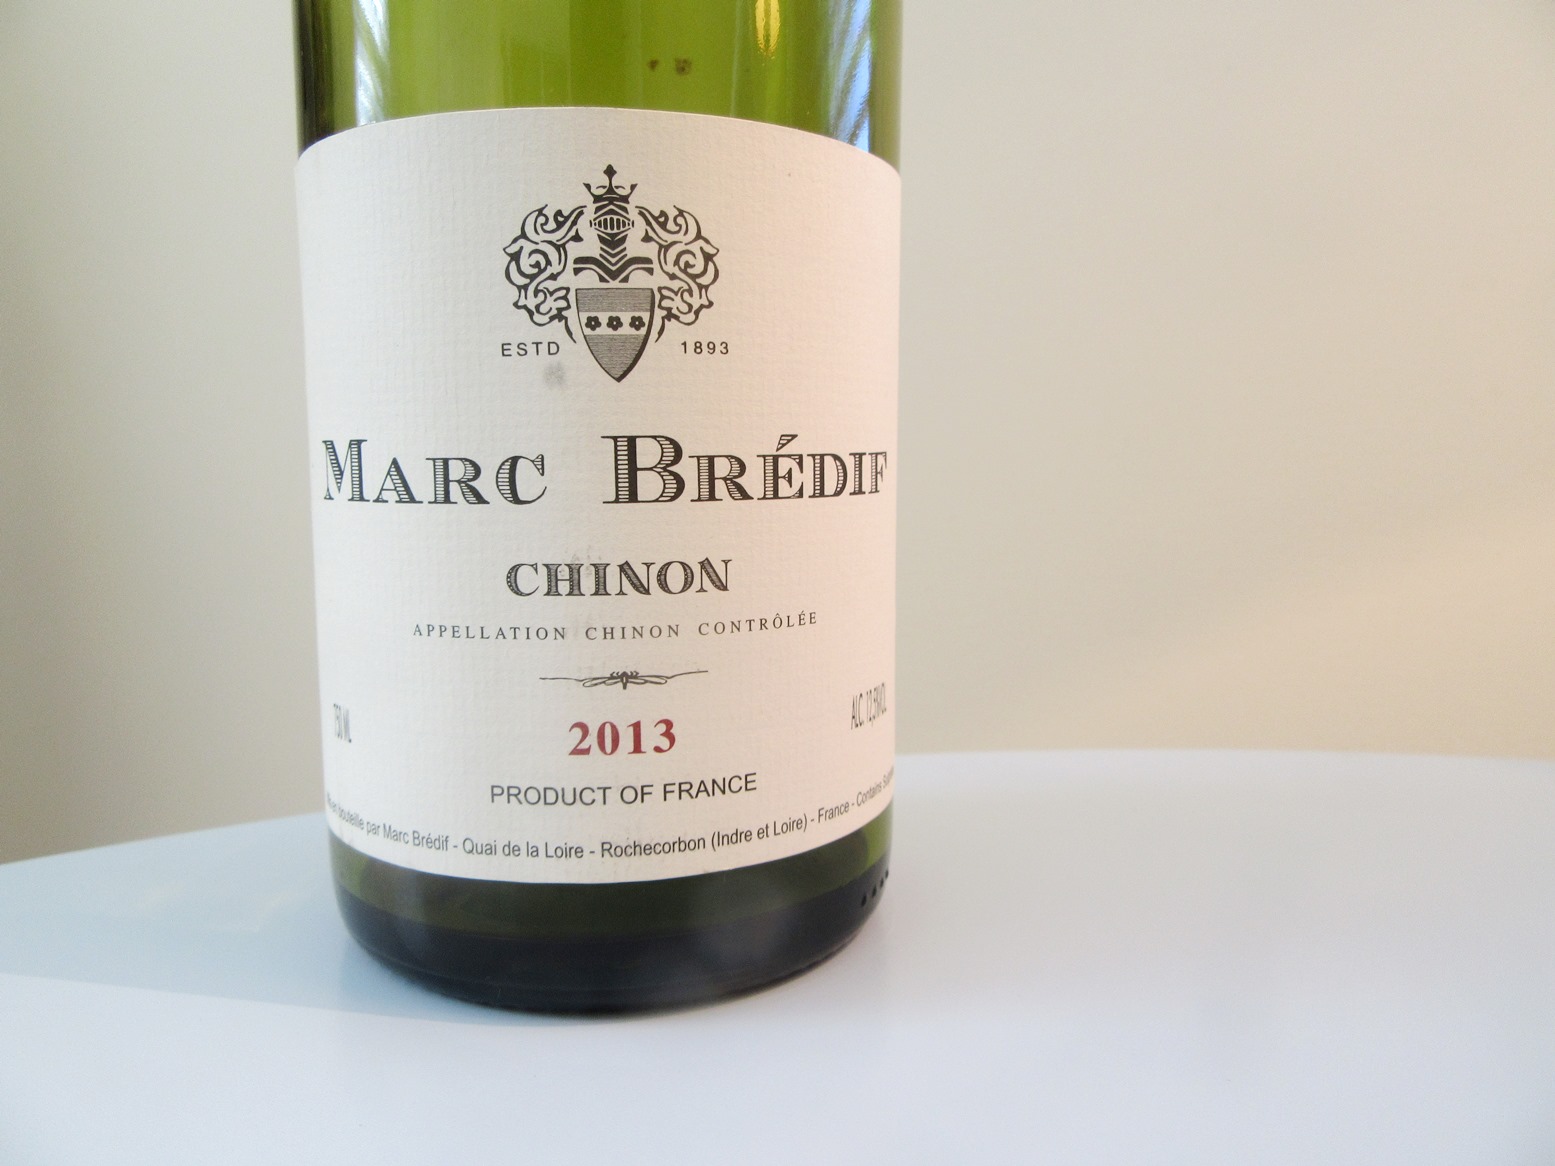 Marc Brédif, Chinon 2013, Chinon, Loire, France, Wine Casual